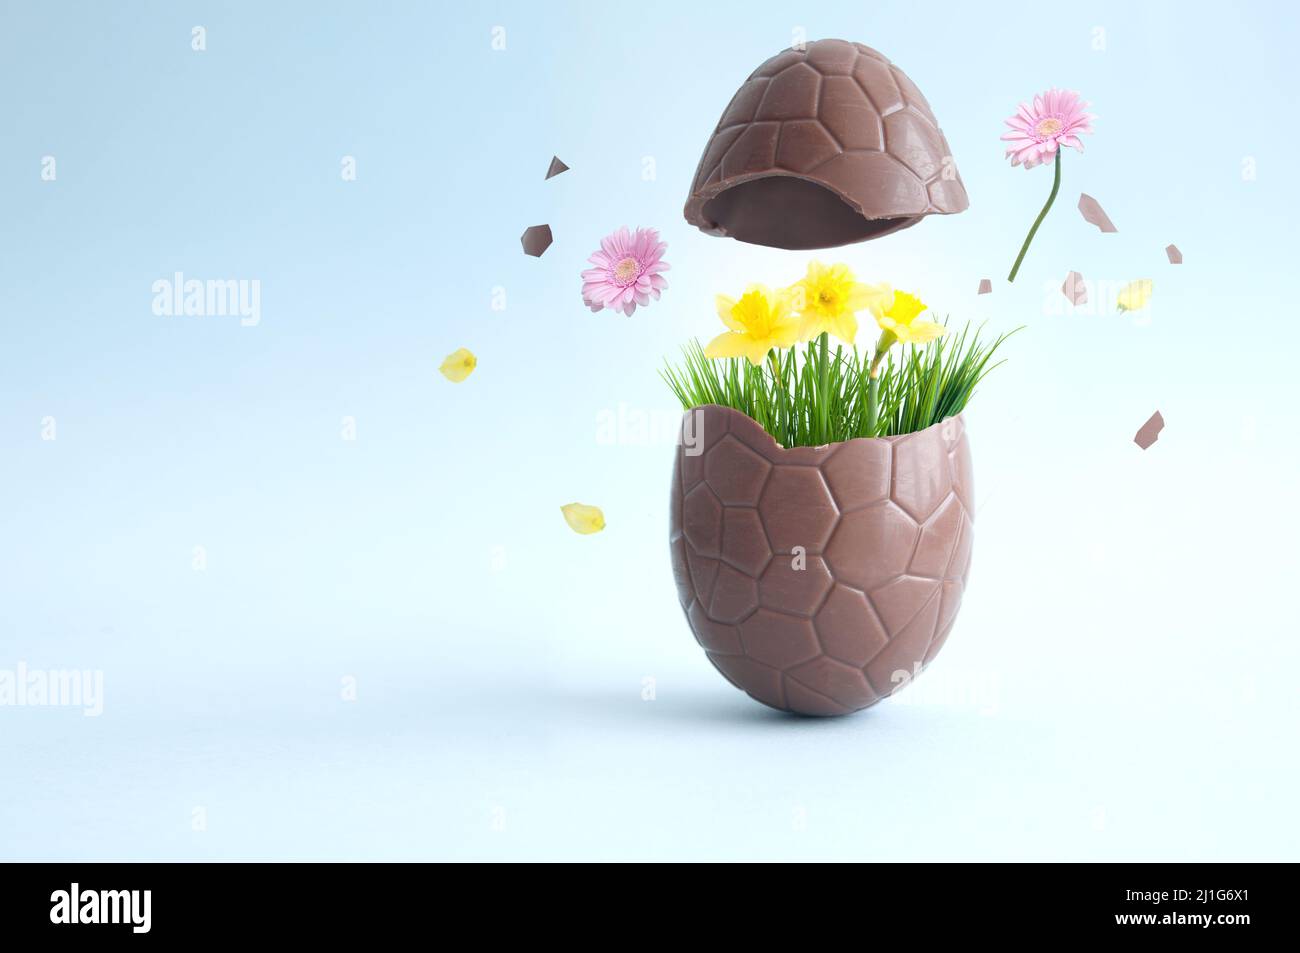 Schokolade osterei bricht mit Explosion der Frühlingsblumen auf Stockfoto